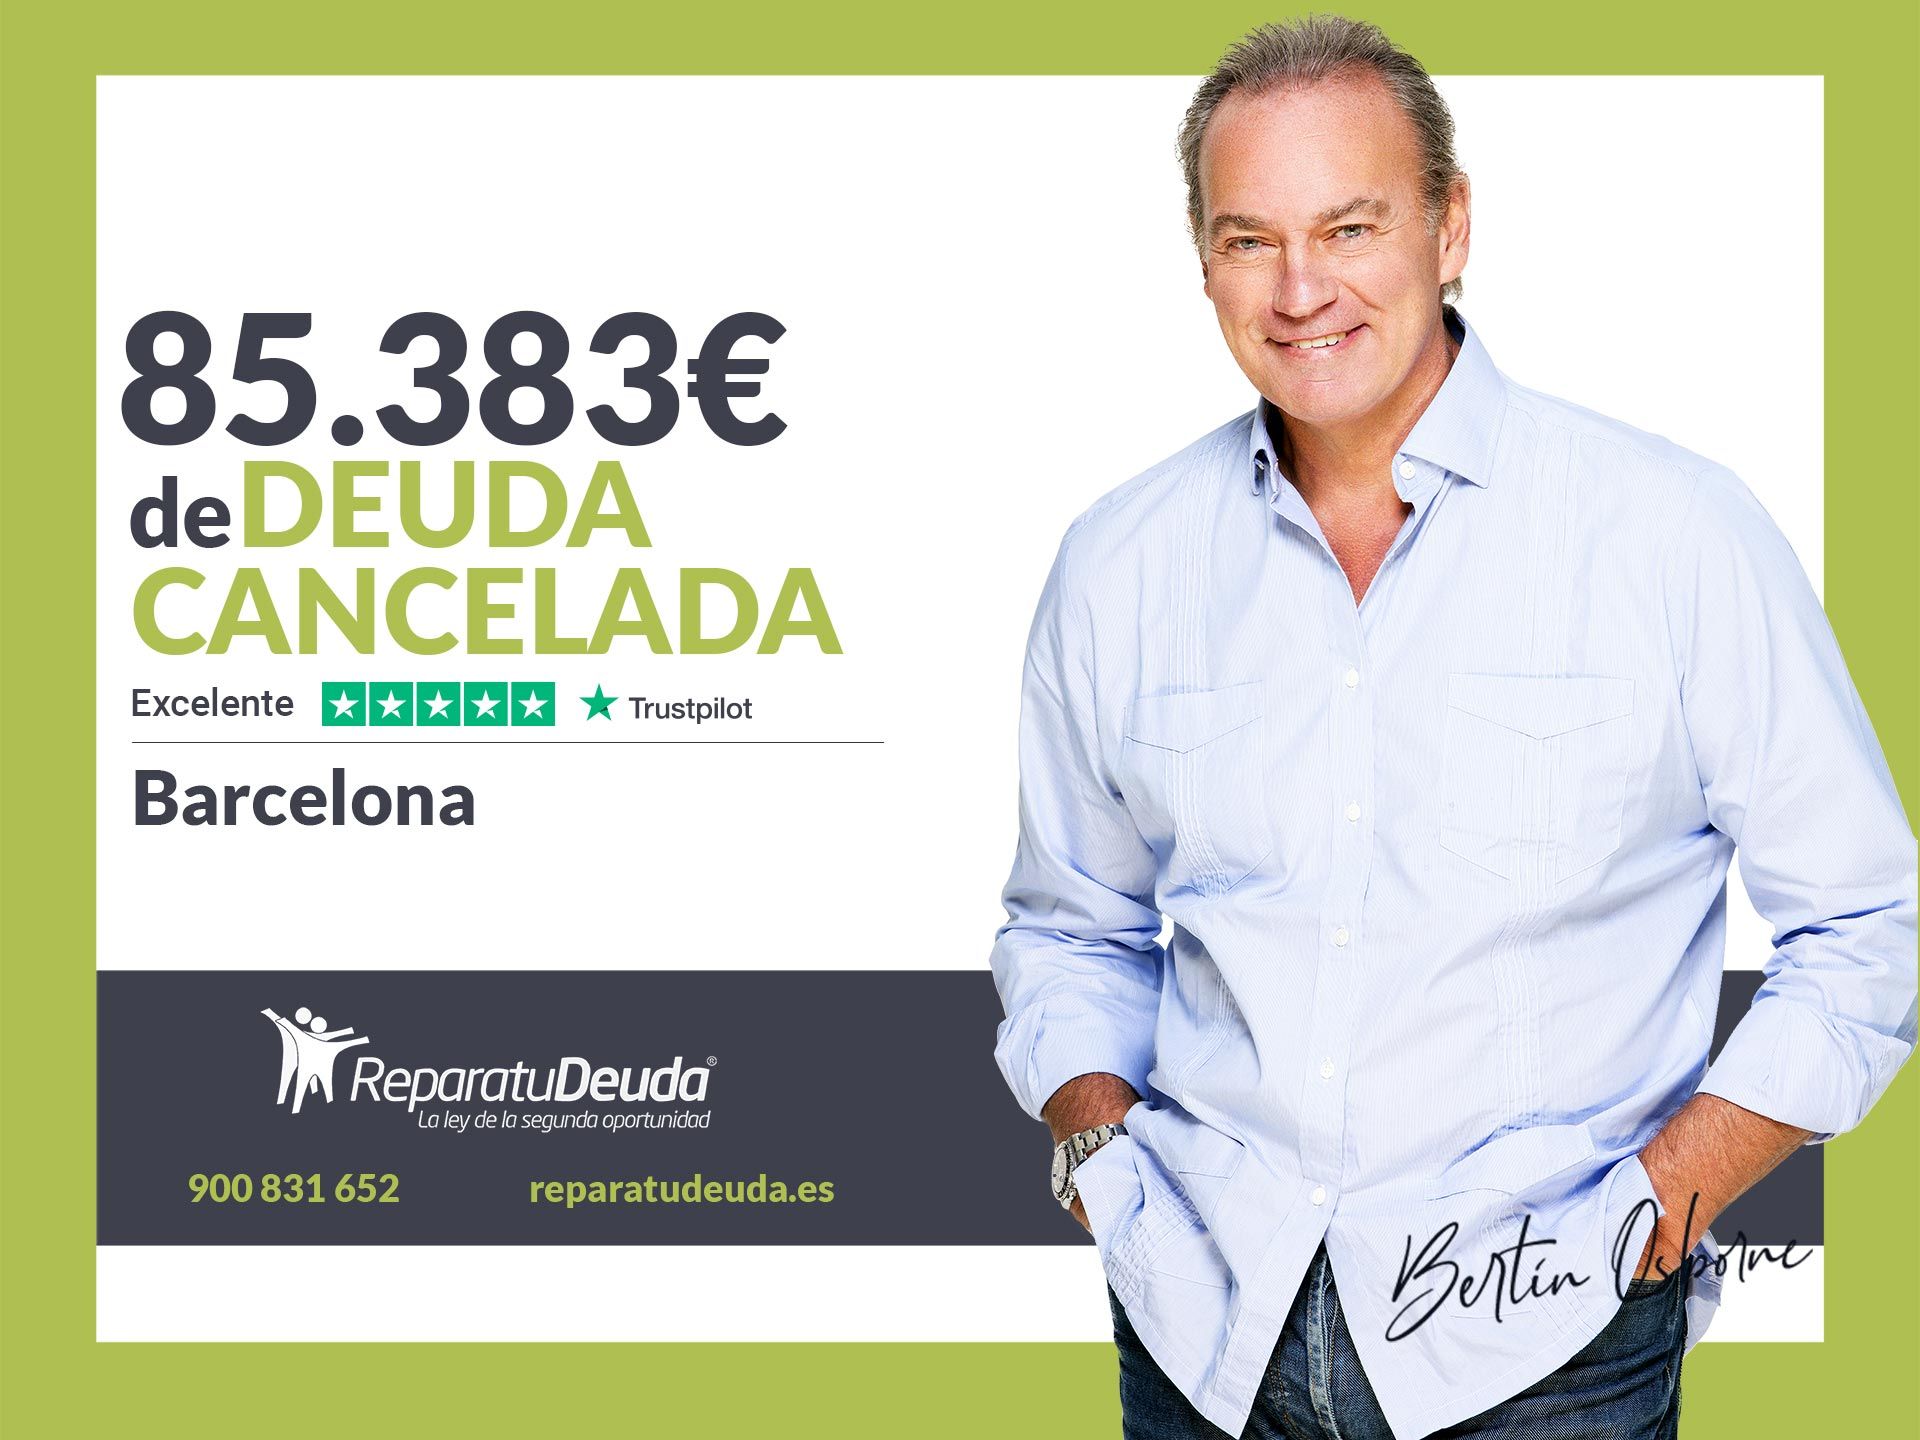 Repara tu Deuda Abogados cancela 85.383? en Barcelona (Catalunya) gracias a la Ley de Segunda Oportunidad